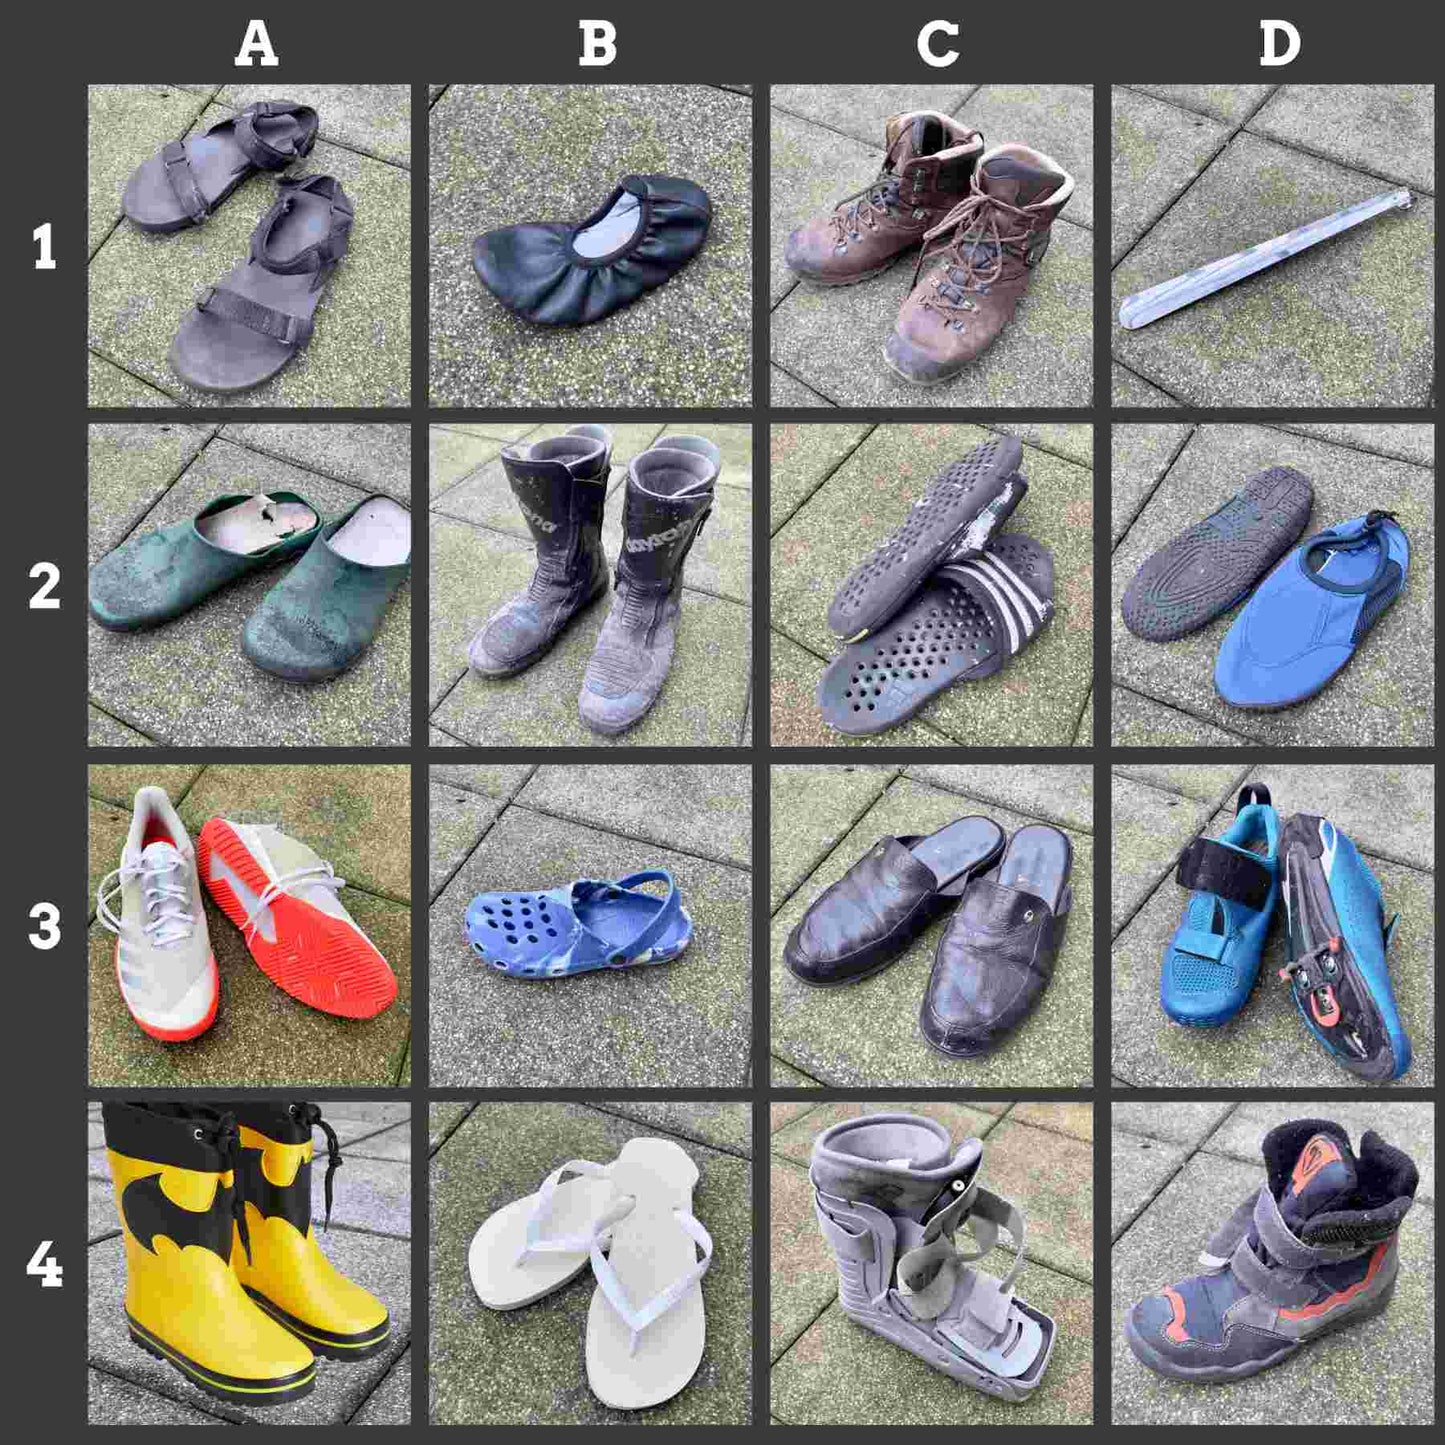 Online-Version der Postkarten-Methode für den Gesprächs-Einstieg. 28 unterschiedliche Paar Schuhe für Stimmung und Befindlichkeit